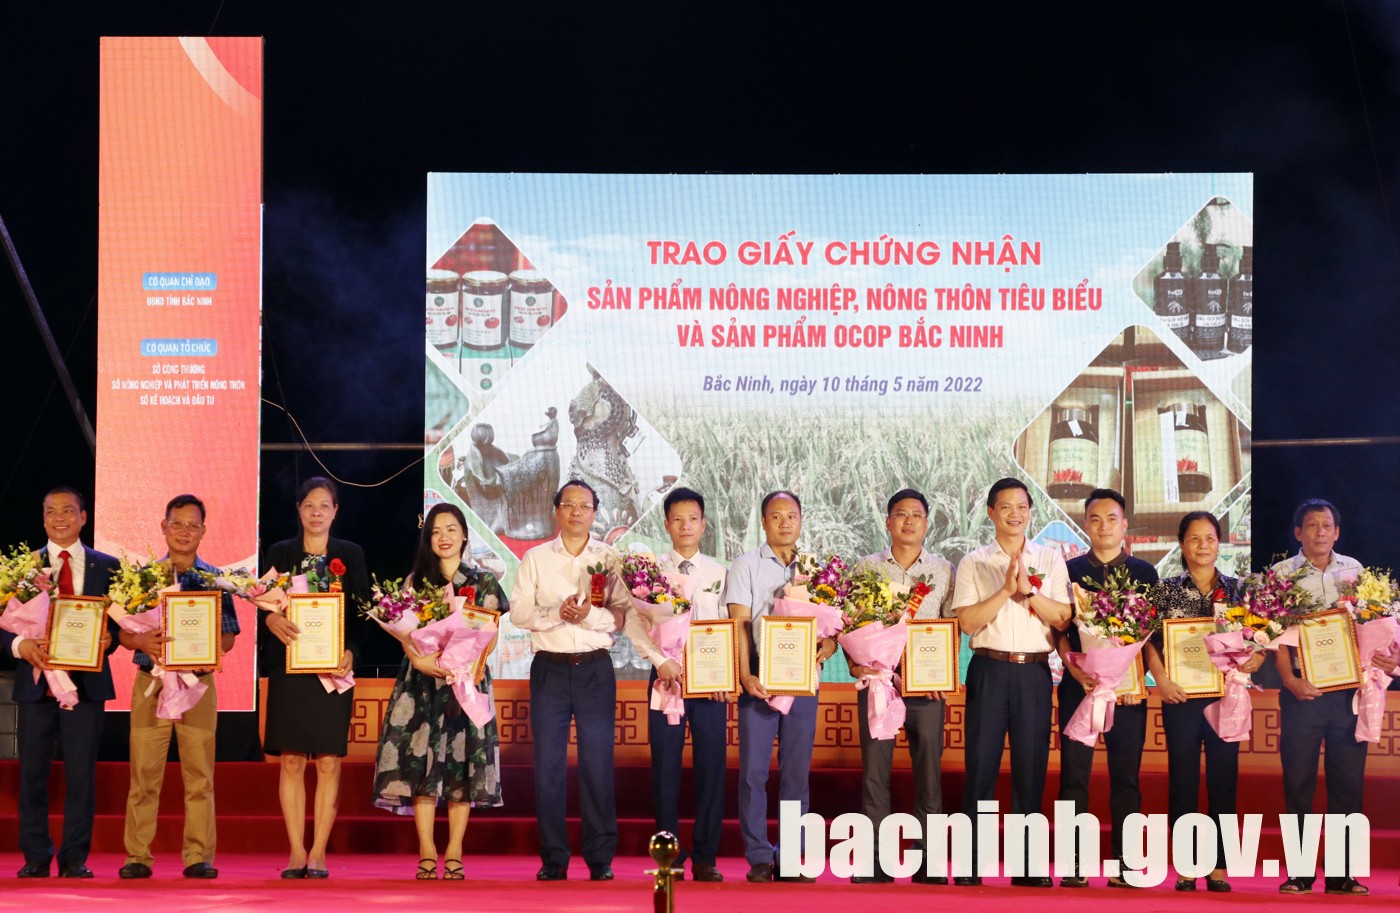 Bắc Ninh: Khai mạc Hội chợ triển lãm thương hiệu và sản phẩm OCOP tiêu biểu - Ảnh 2.